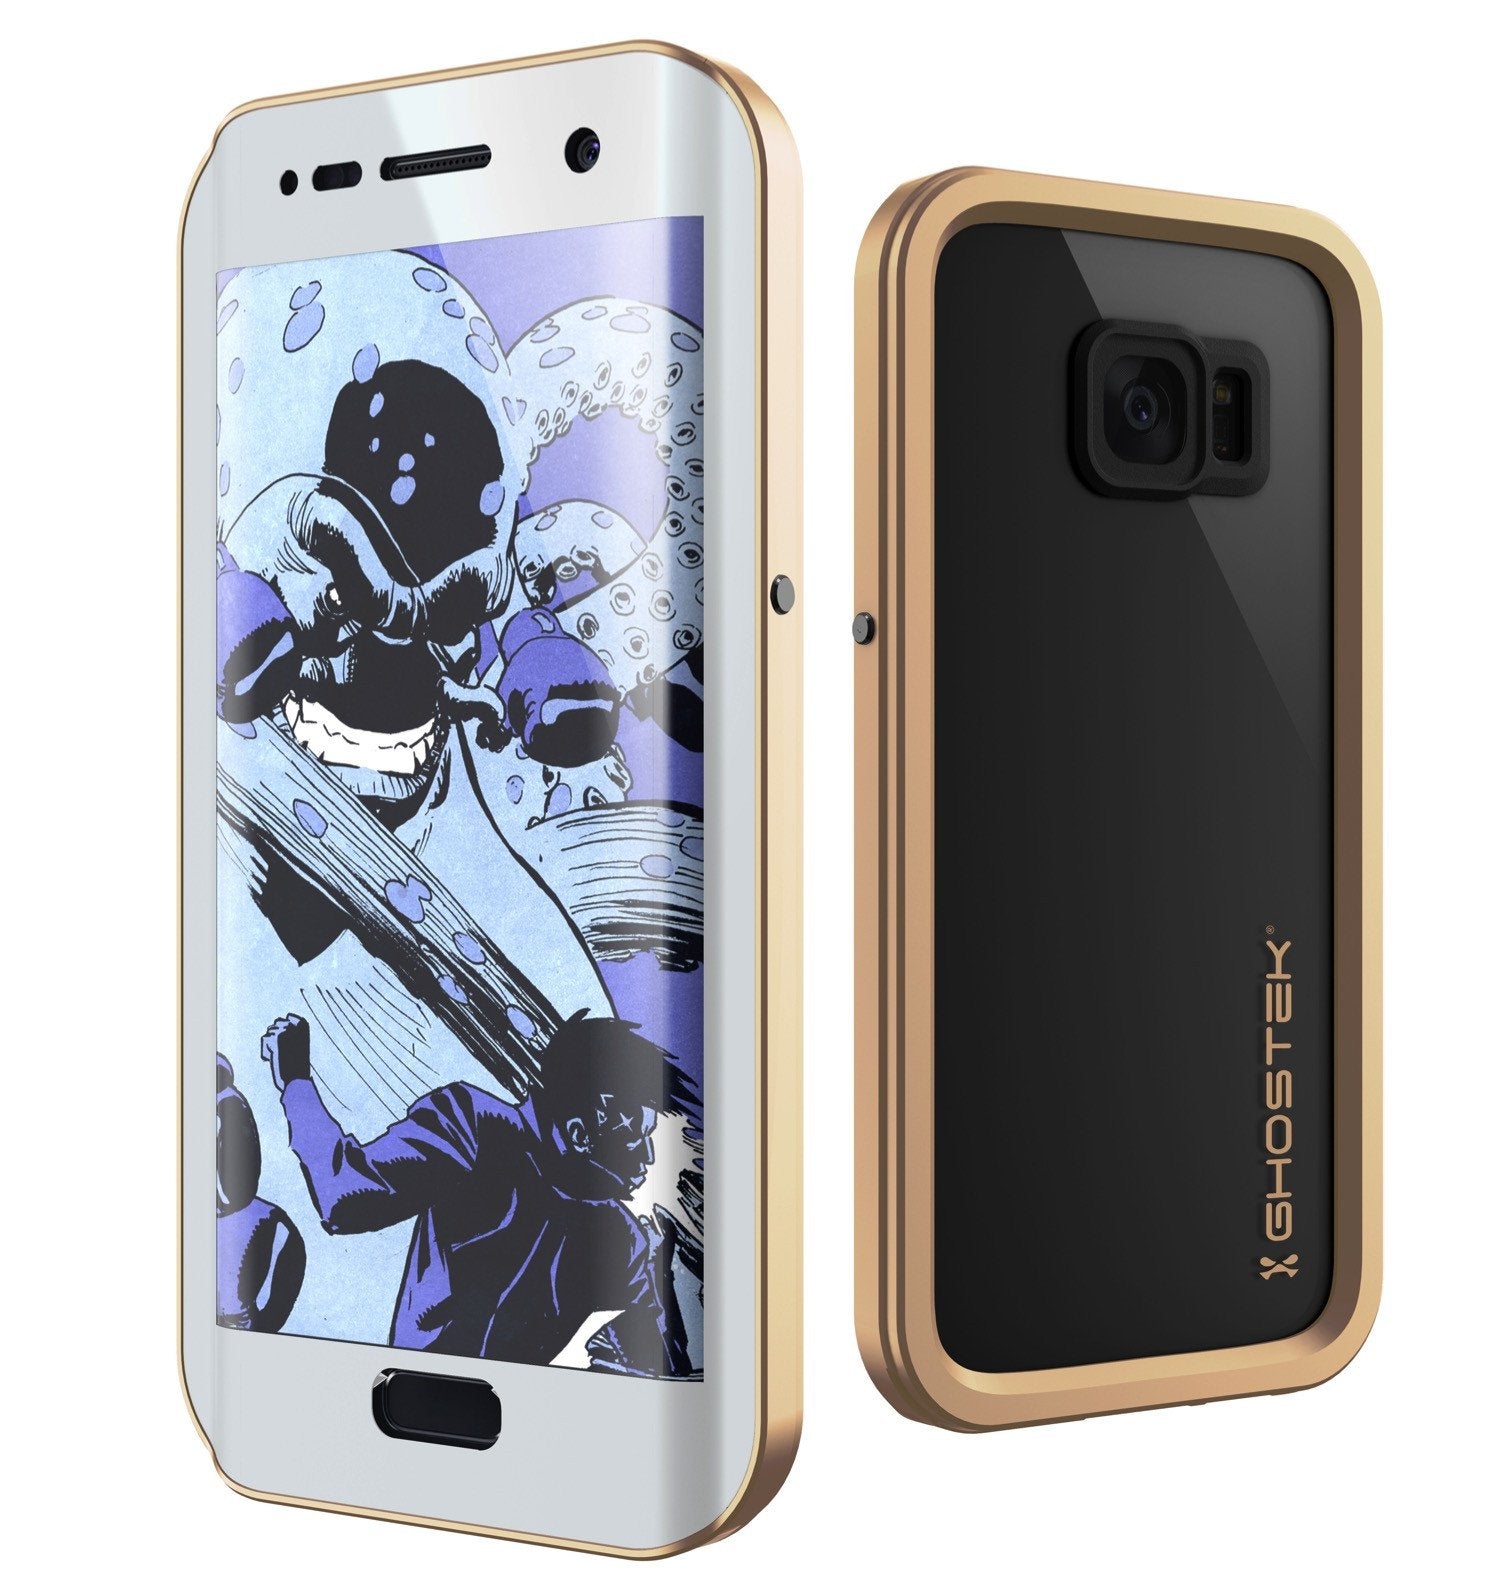 Galaxy S7 EDGE Waterproof Case, Ghostek Atomic 2.0 Gold Shock/Dirt/Snow Proof | Lifetime Warranty